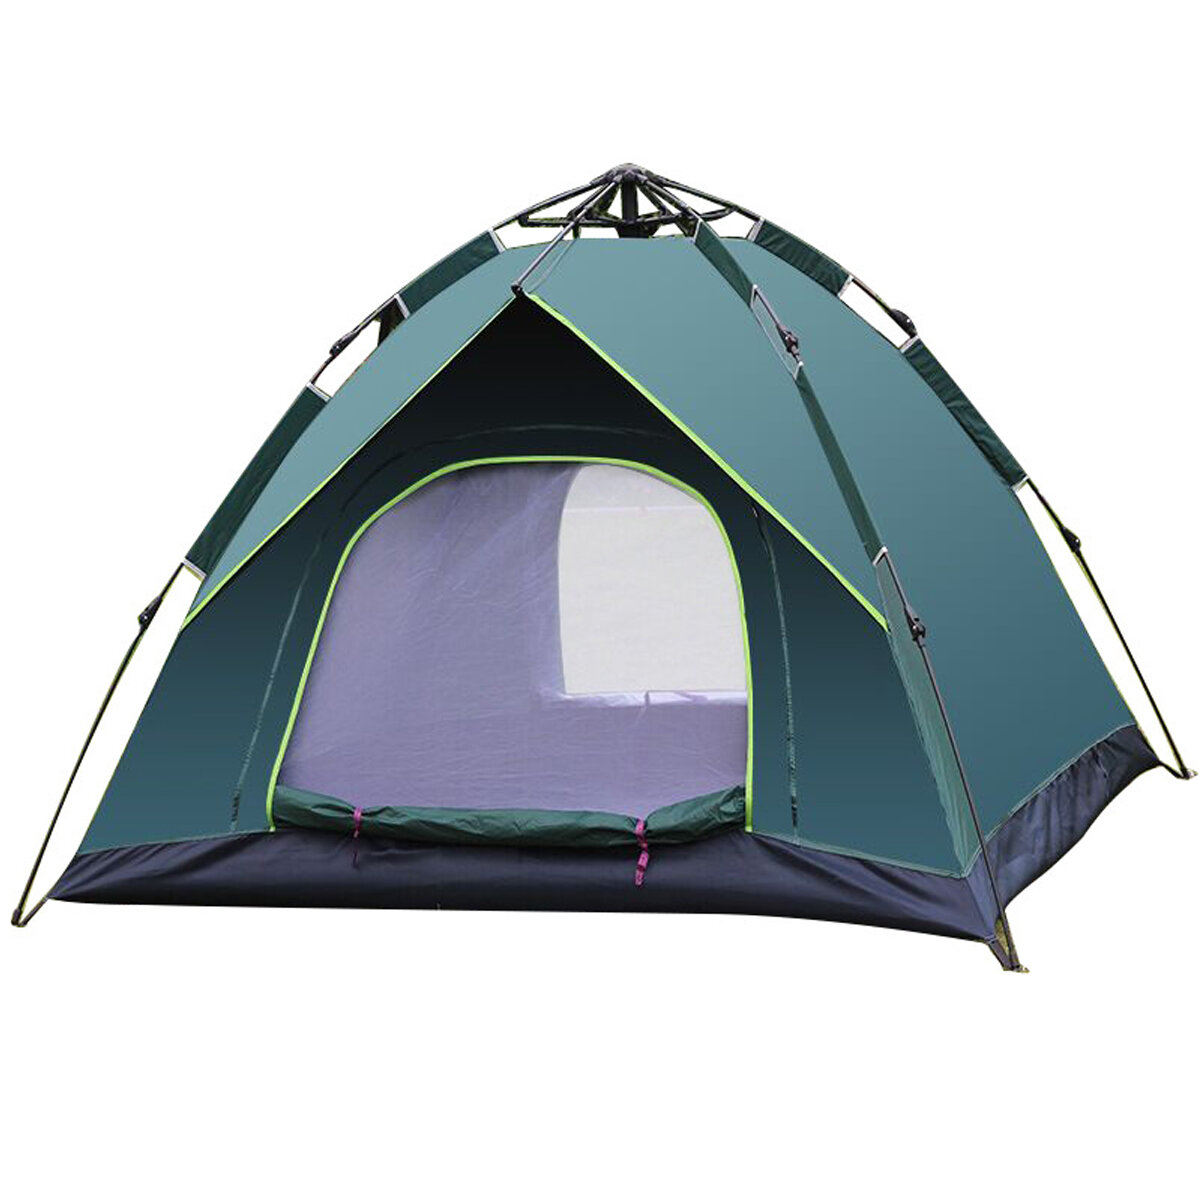 IPRee® 3-4 أشخاص ضد للماء خيمة تخييم 210T PU قماش UV حماية خيمة للسفر في الهواء الطلق التنزه